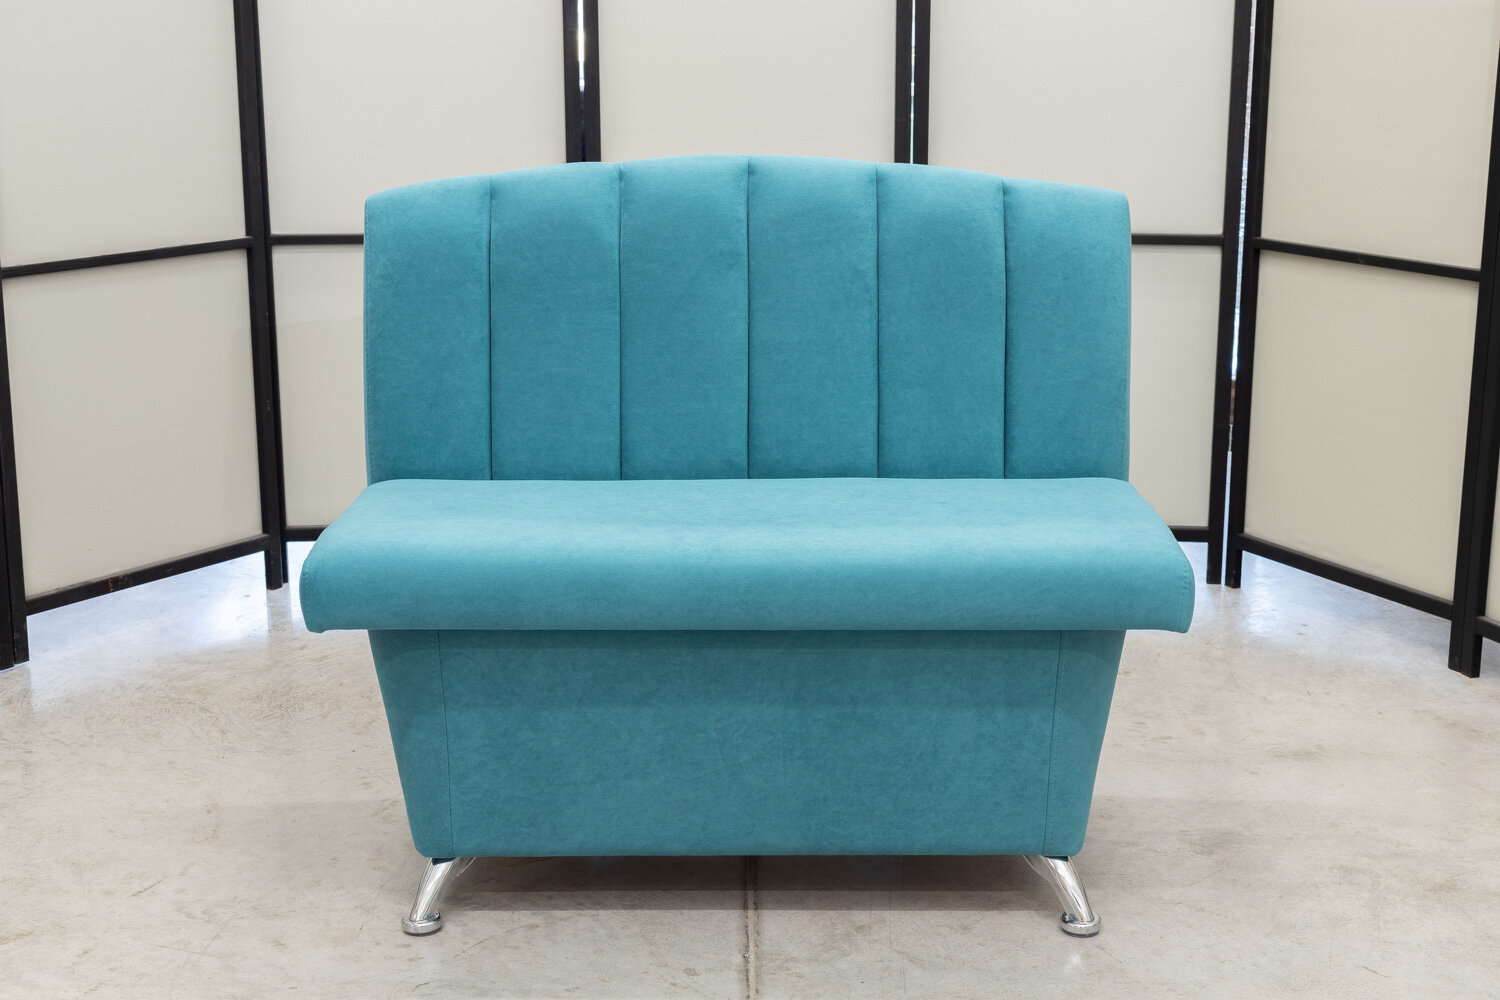 Кухонный диван Альт с ящиком, 100х56 см, обивка мебельный велюр, цвет сине-зеленый